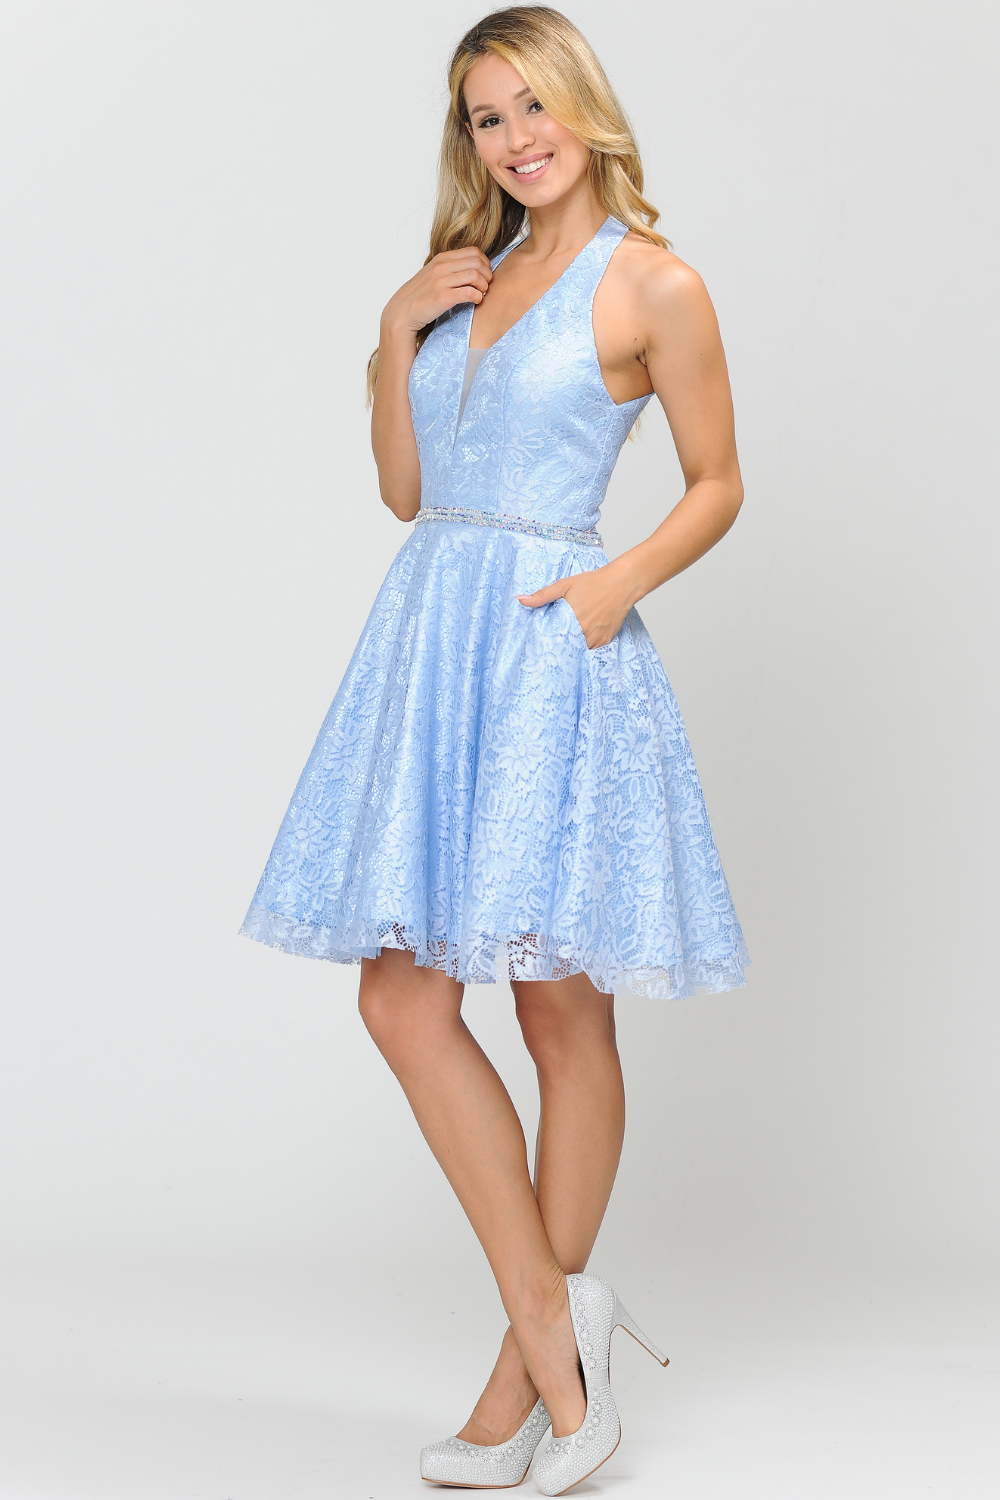 Lace Bridesmaids Short Dress - LAY8428